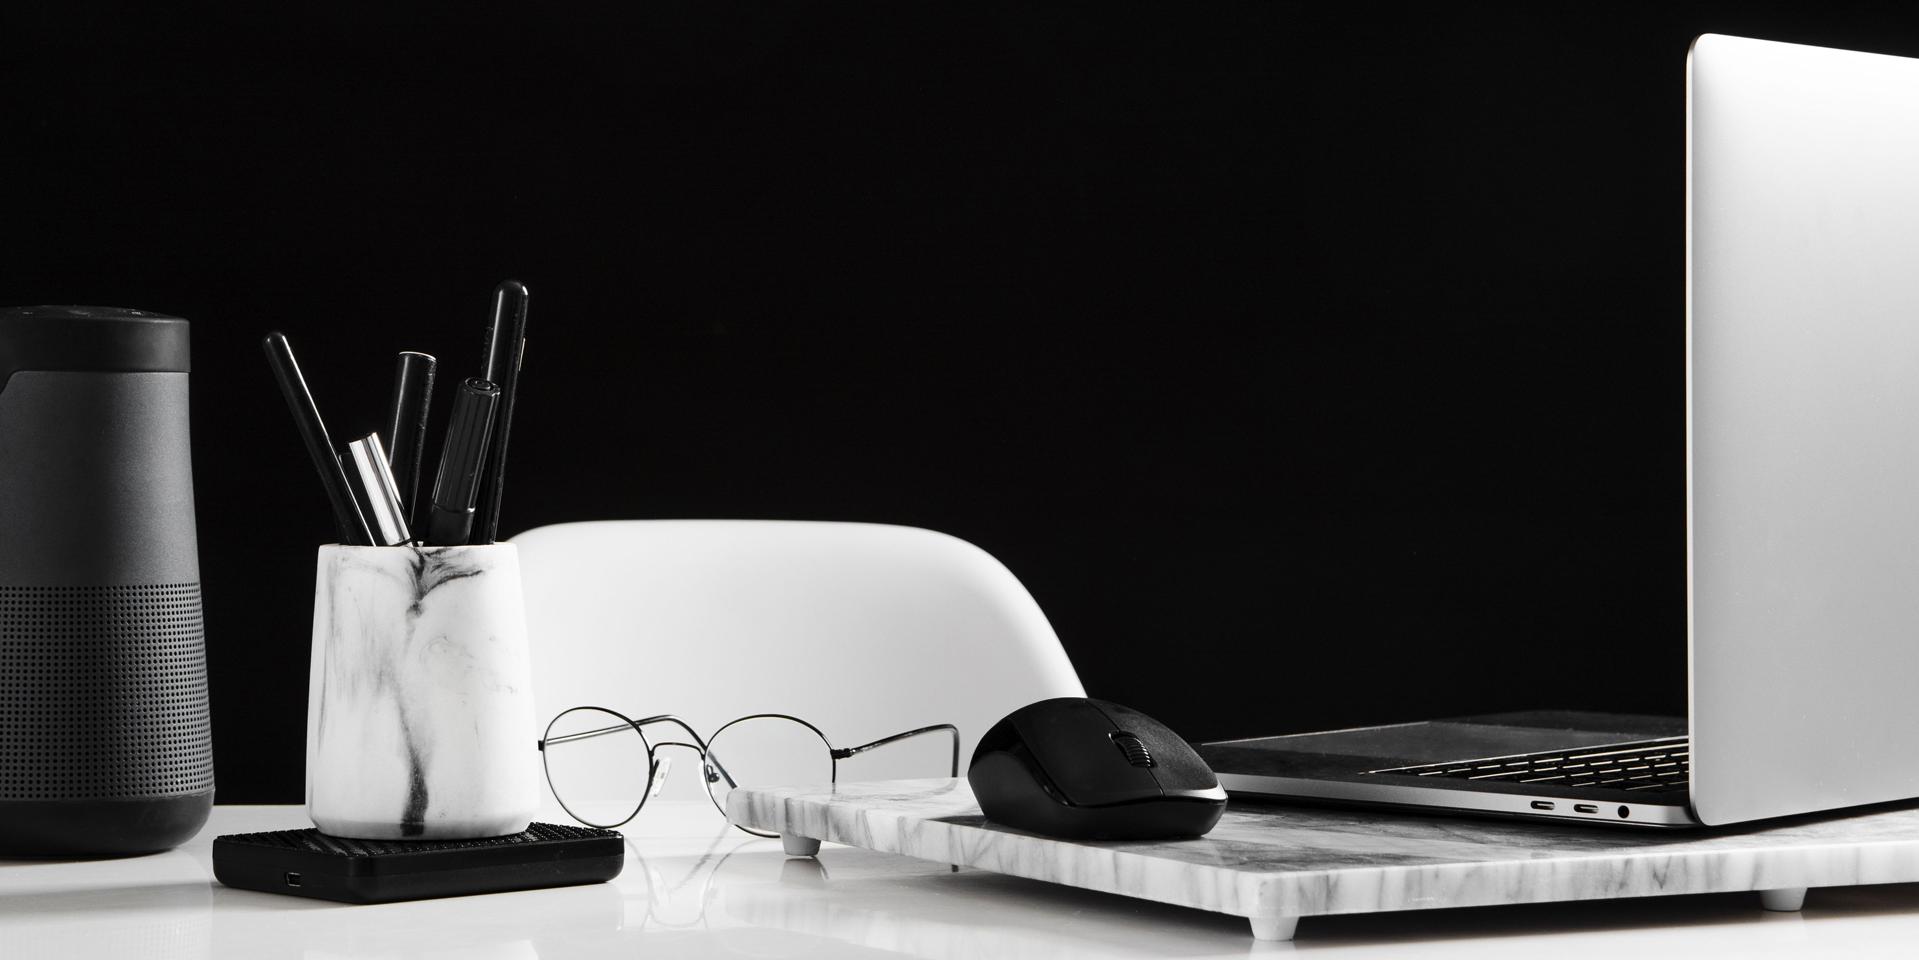 Ryddelig arbejdplads med en åben bærbar til højre og med en mus. Foran den ligger der et par briller. Til venstre i billedet er der en æske med penne.